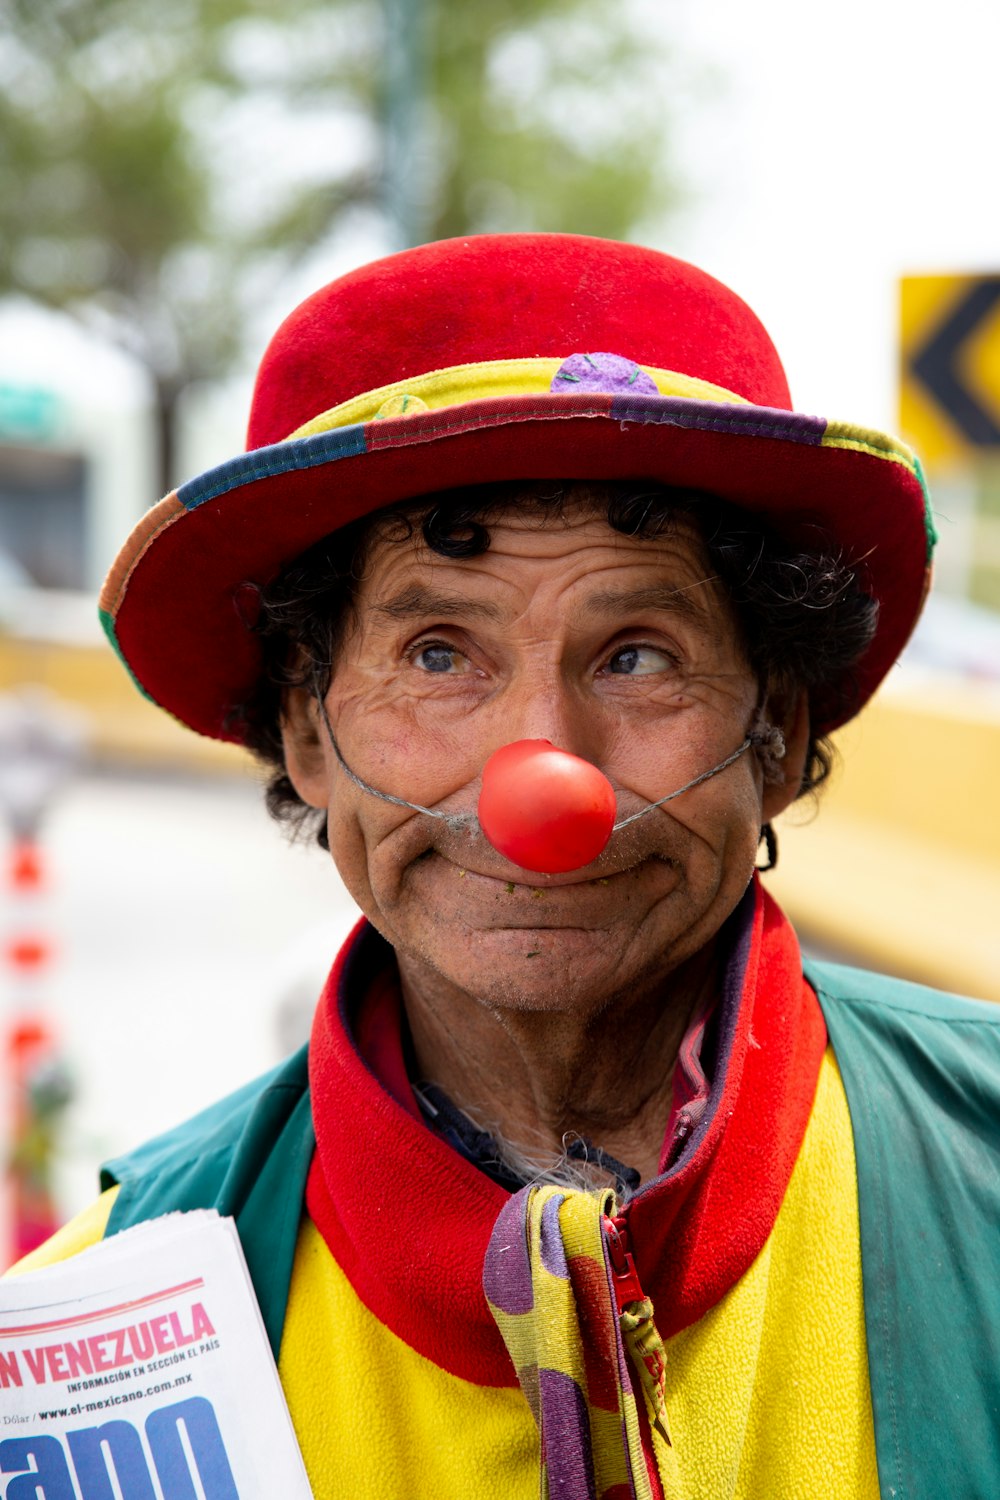 man as clown during daytime